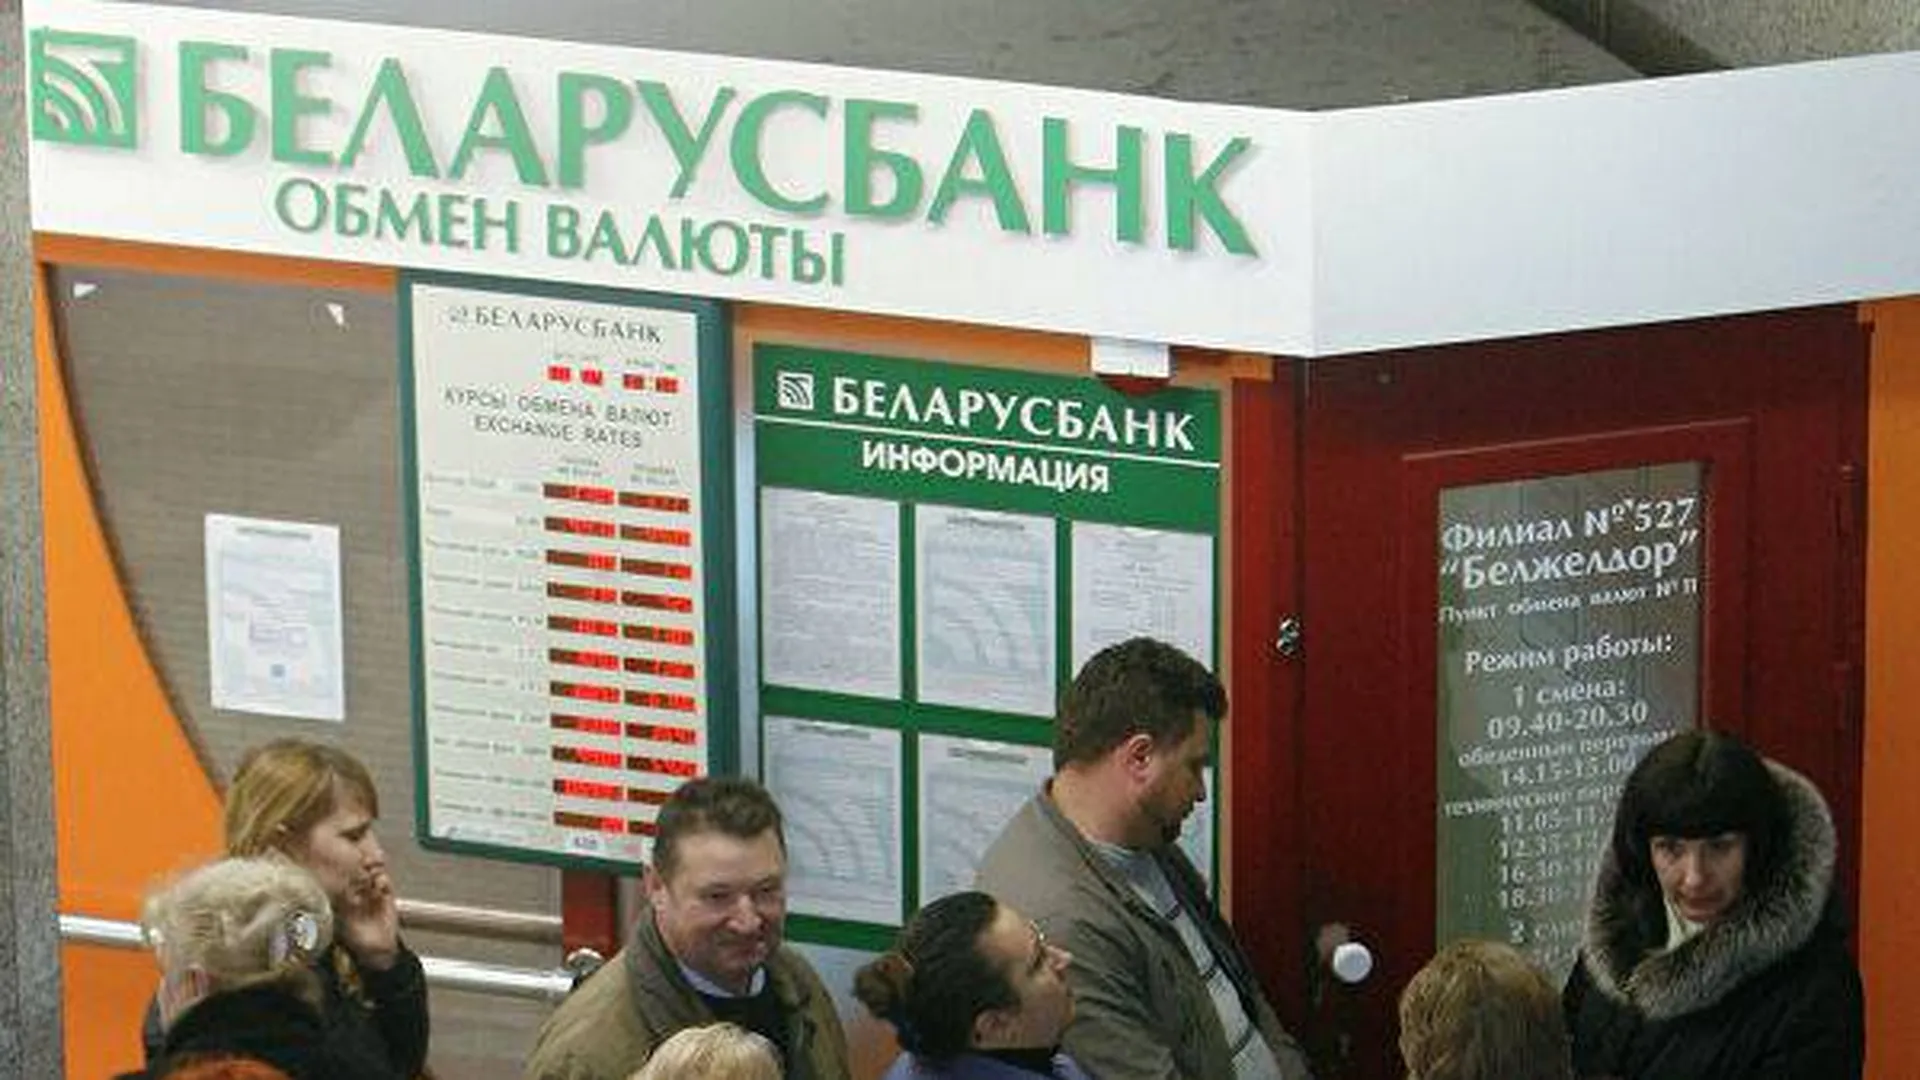 Беларусбанк обмен валют. Обменный пункт на белорусском вокзале Беларусбанк. Обменный пункт на белорусском вокзале. Обмен валюты у вокзала.